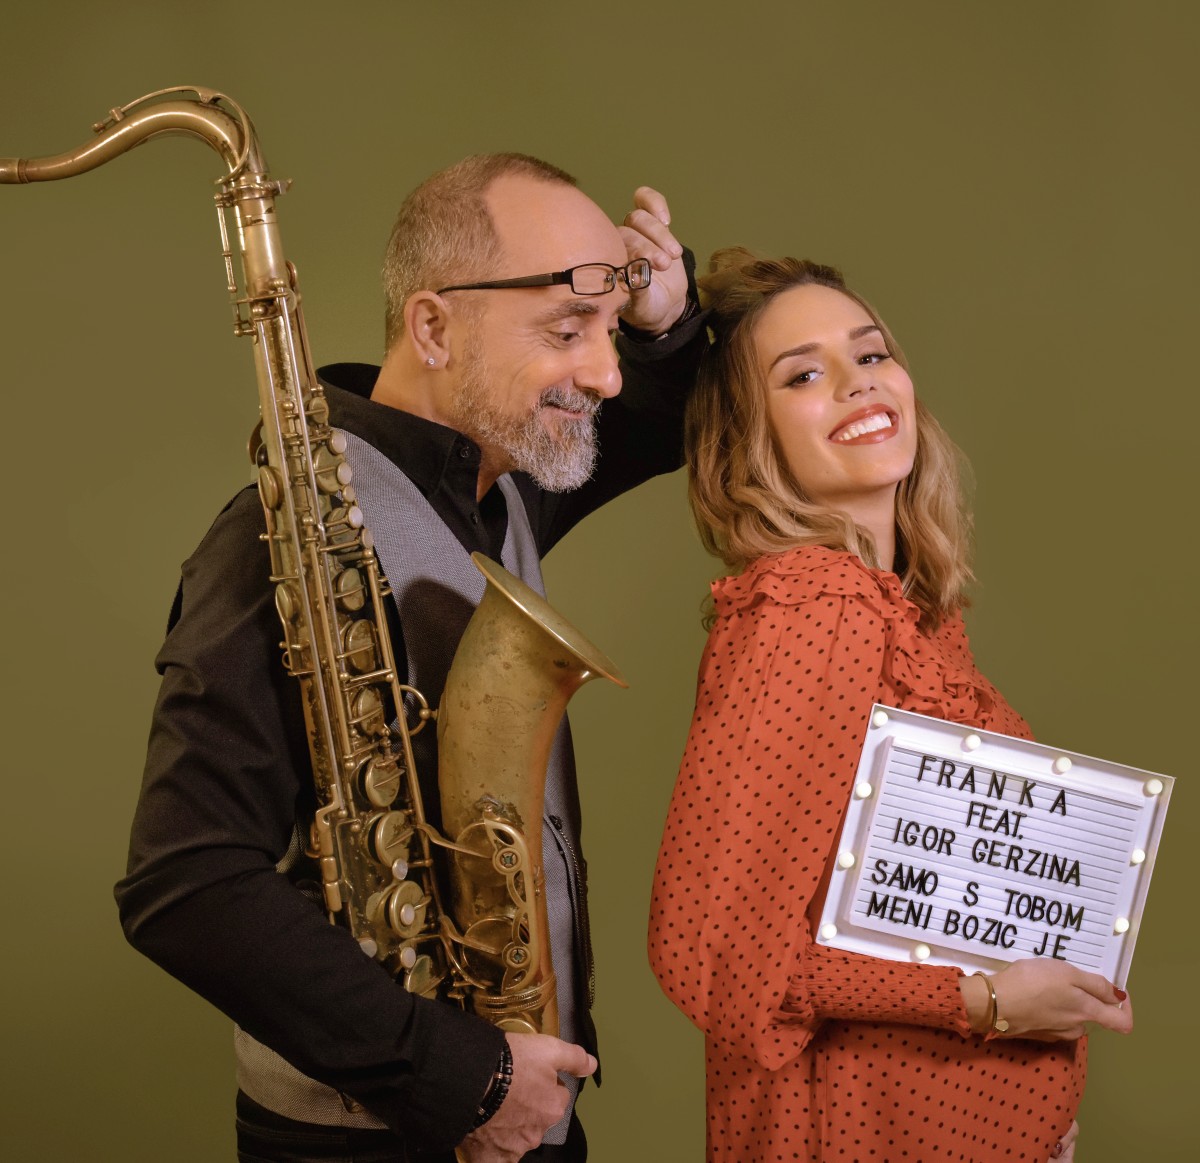 Frankina božićna bajka u suradnji sa saksofonistom Igorom Geržinom